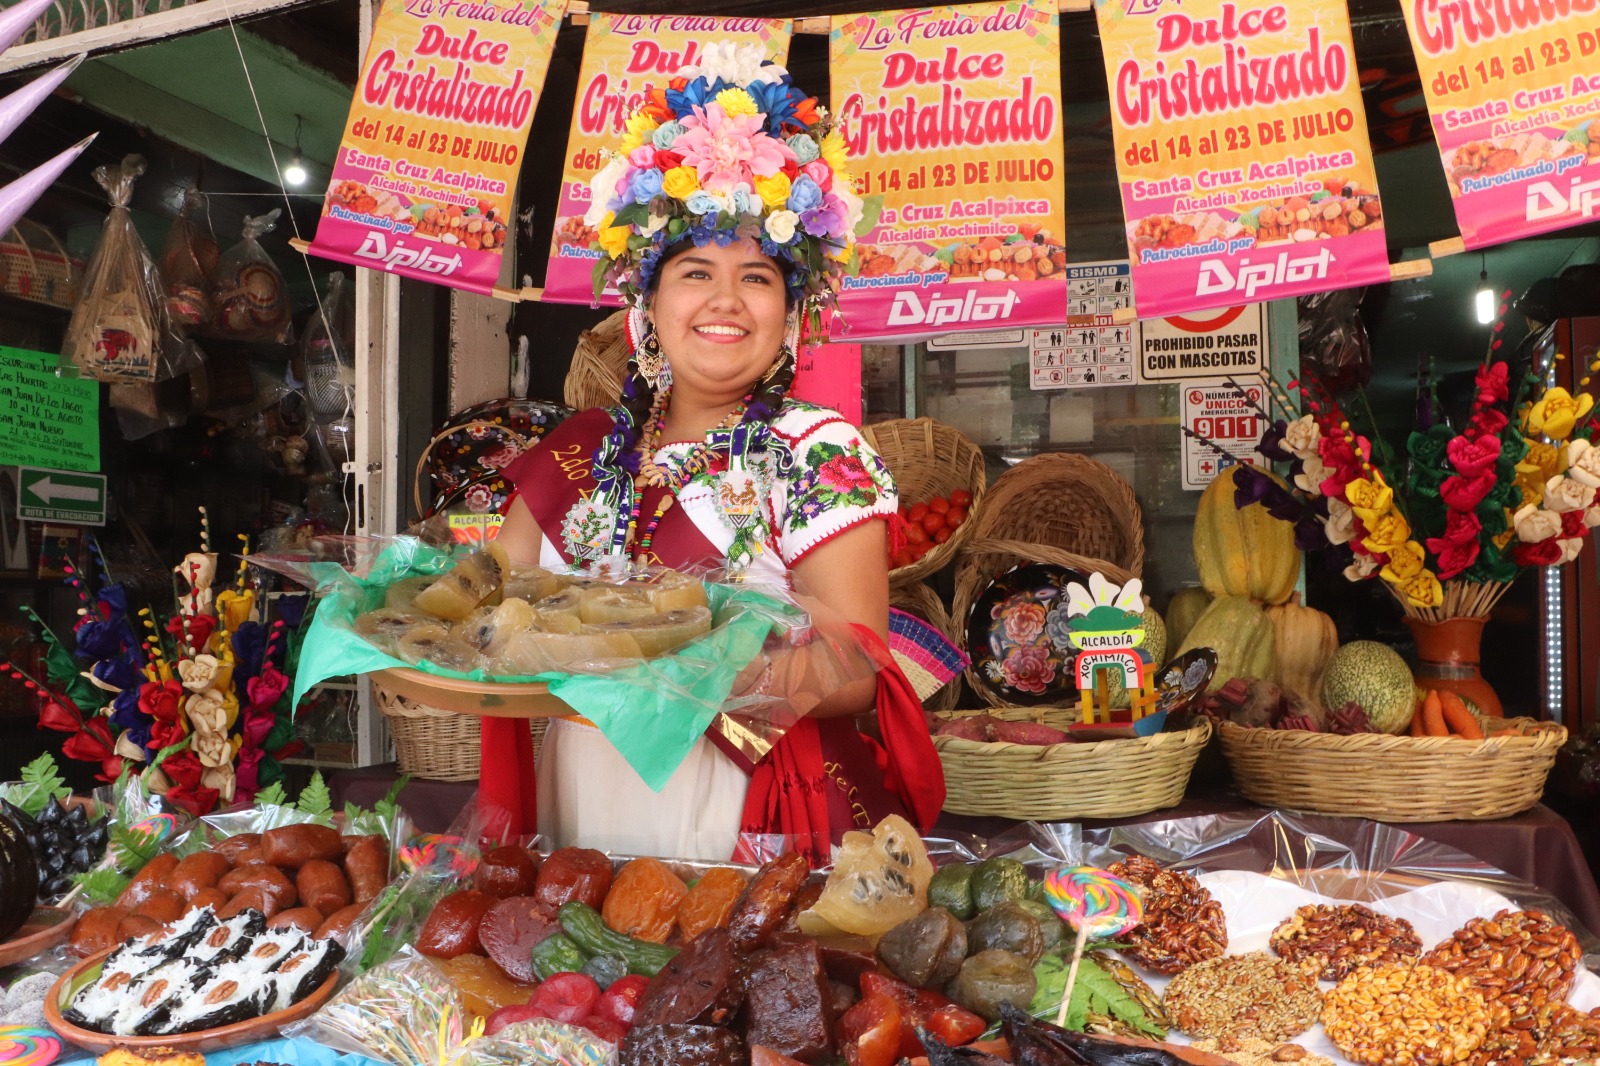 Alistan en Xochimilco Feria del Dulce Cristalizado